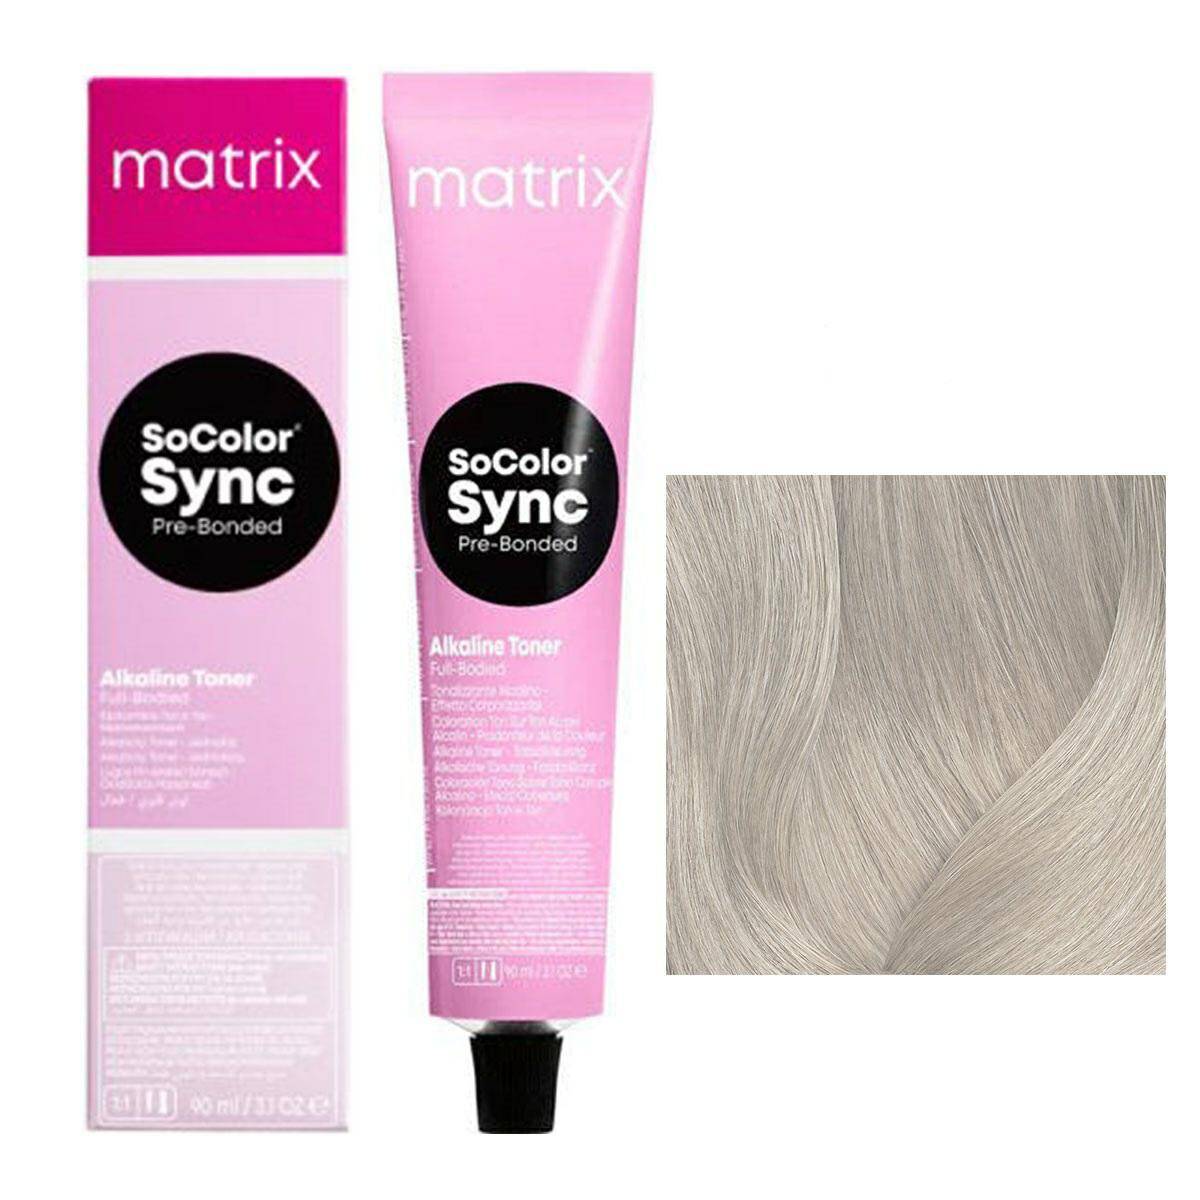 Matrix SoColor Sync Pre-Bonded Farba do włosów - 11V Super jasny blond fioletowy, półtrwała koloryzacja ton w ton 90ml